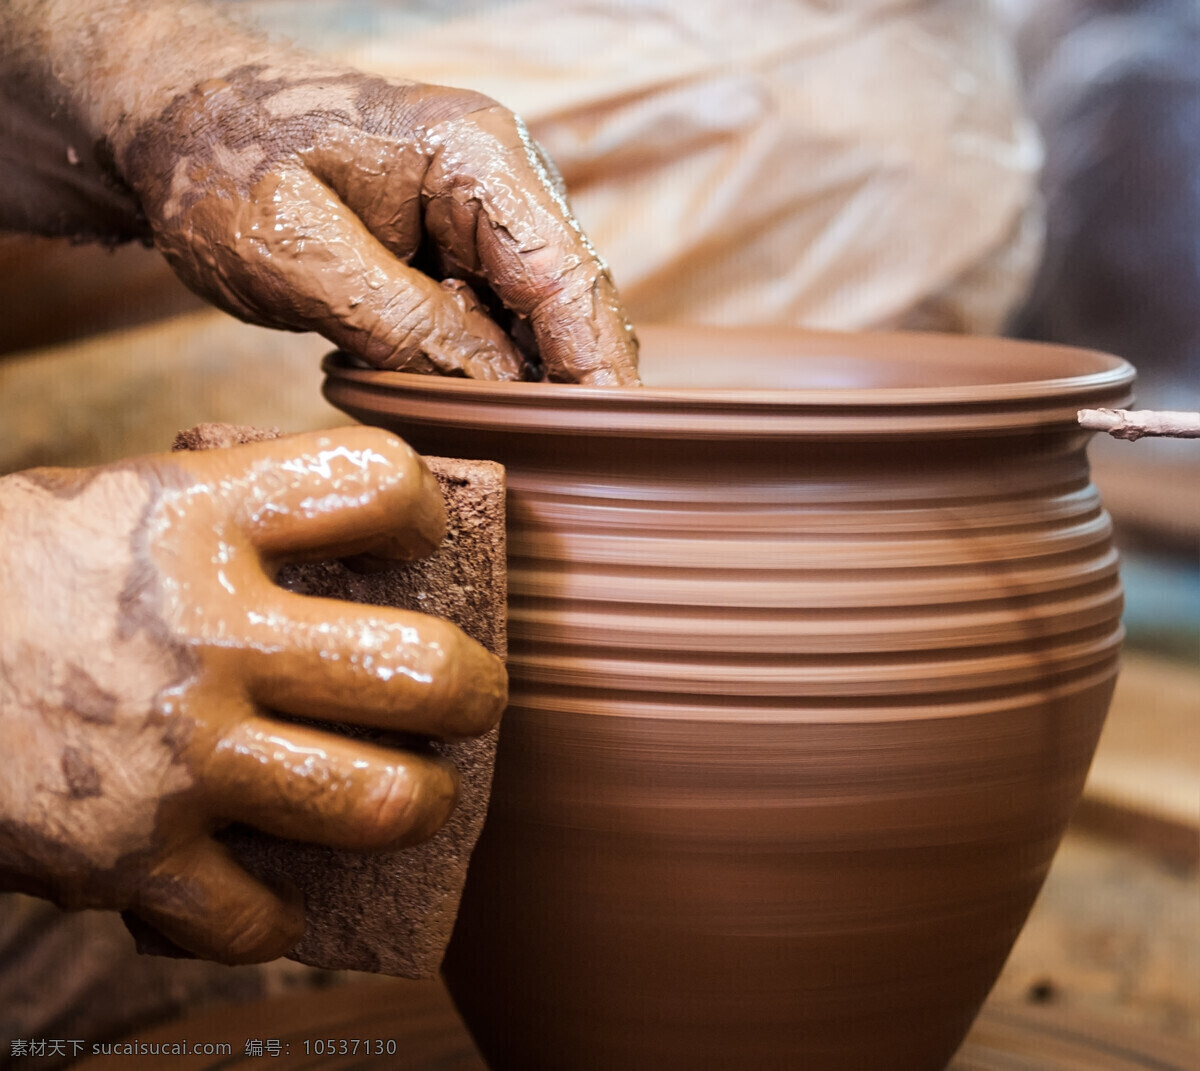 双手 陶器 陶罐器皿 手势 陶艺 陶瓷 陶瓷制作 瓷器 传统工艺品 其他类别 生活百科